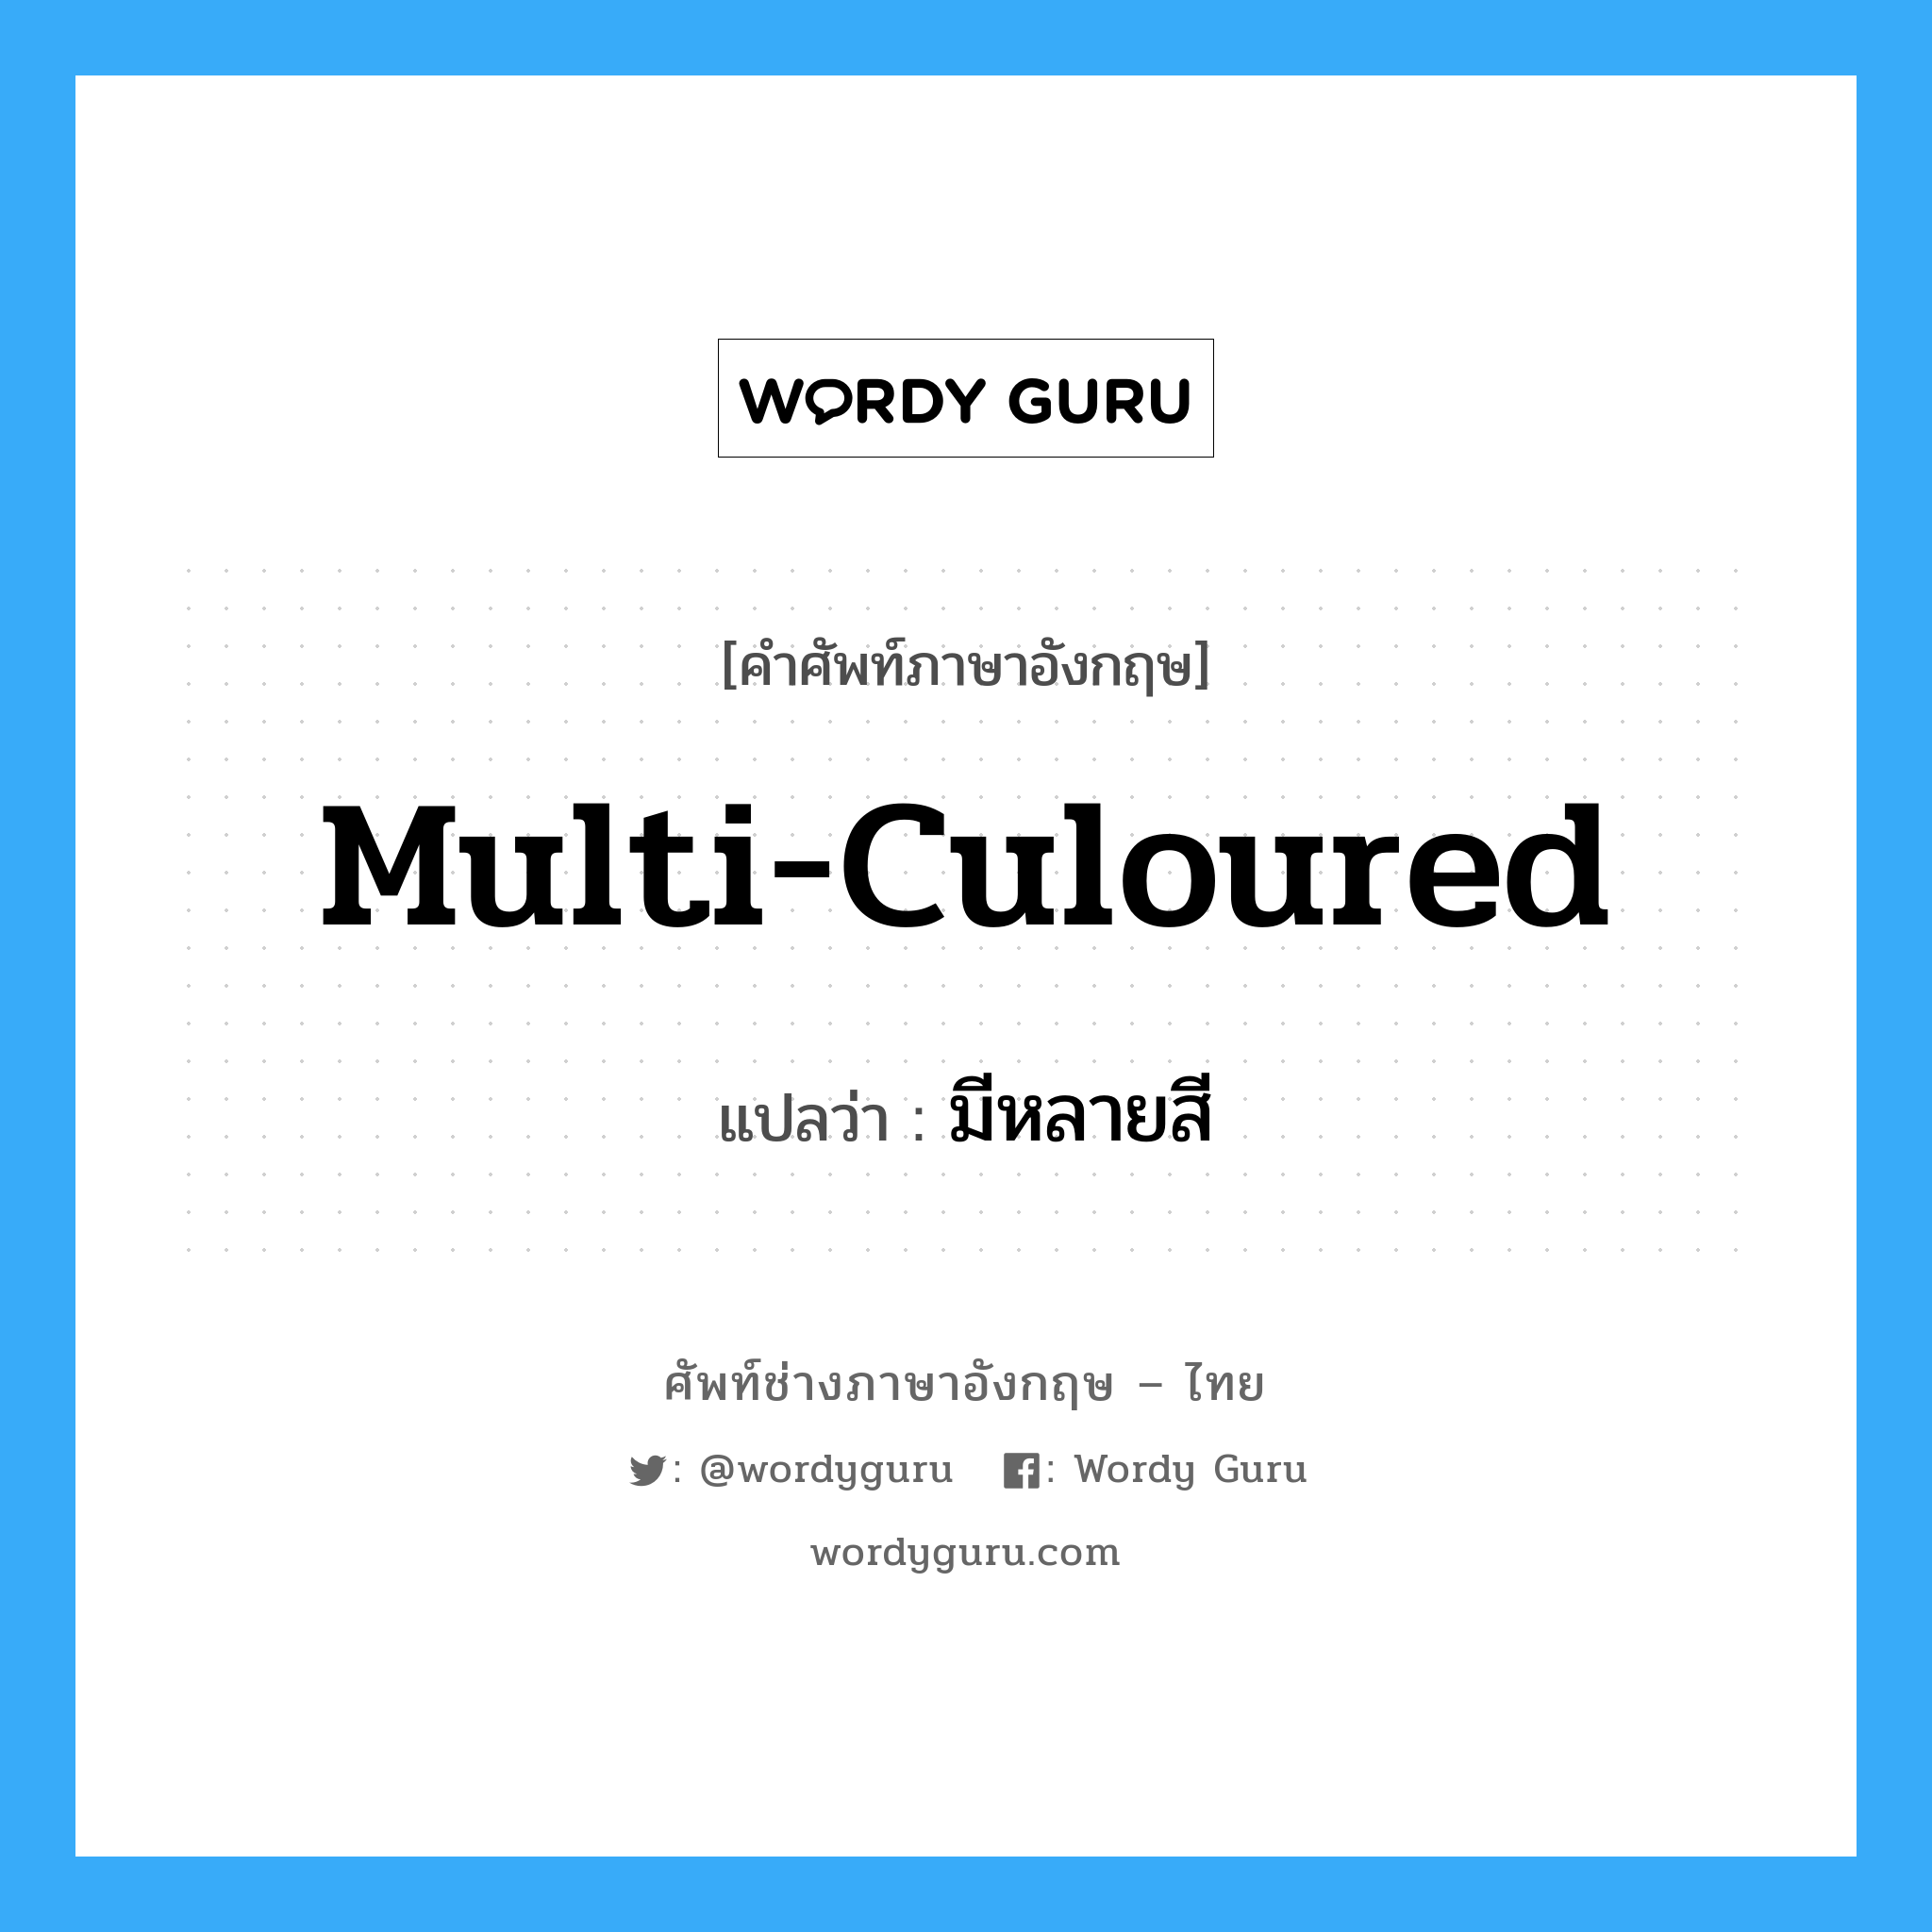 มีหลายสี ภาษาอังกฤษ?, คำศัพท์ช่างภาษาอังกฤษ - ไทย มีหลายสี คำศัพท์ภาษาอังกฤษ มีหลายสี แปลว่า multi-culoured